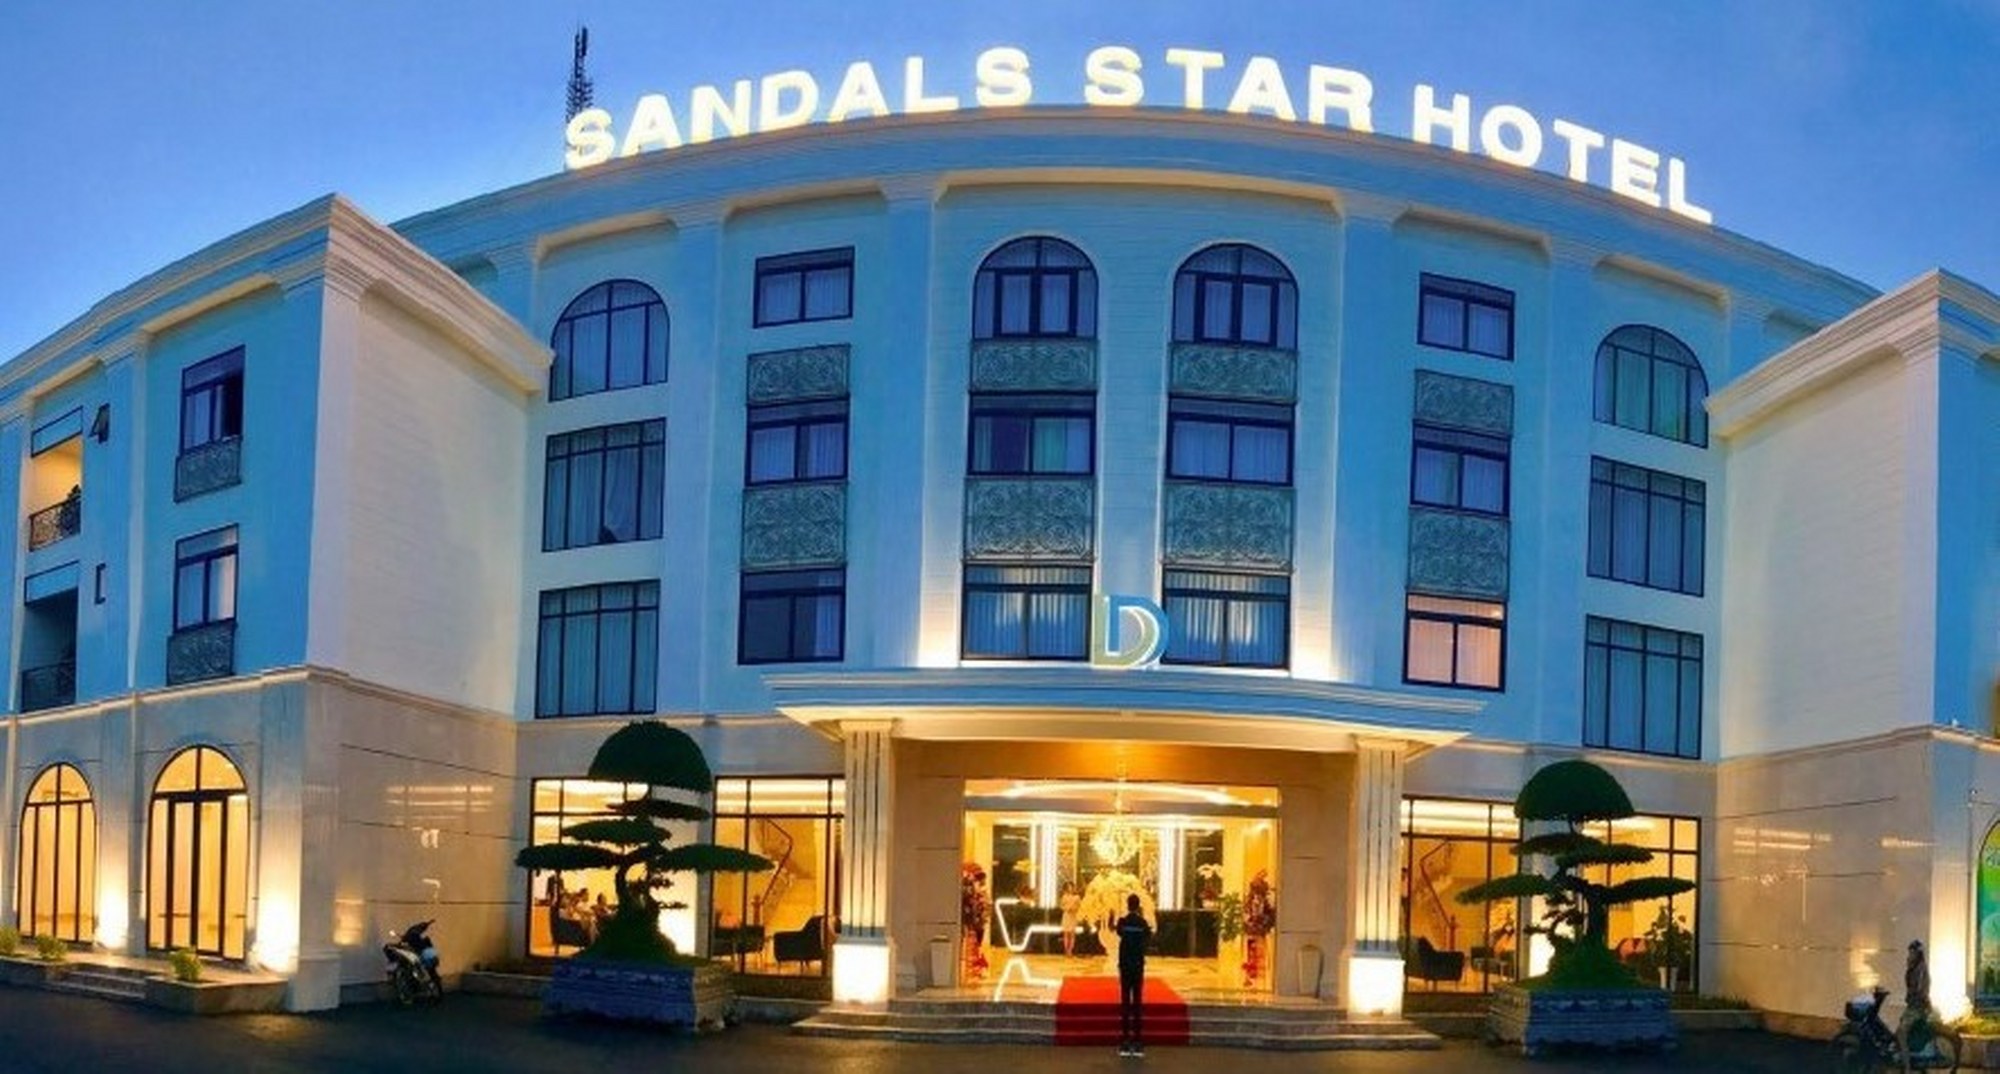 Bên ngoài Sandals Star Hotel Duc Trong